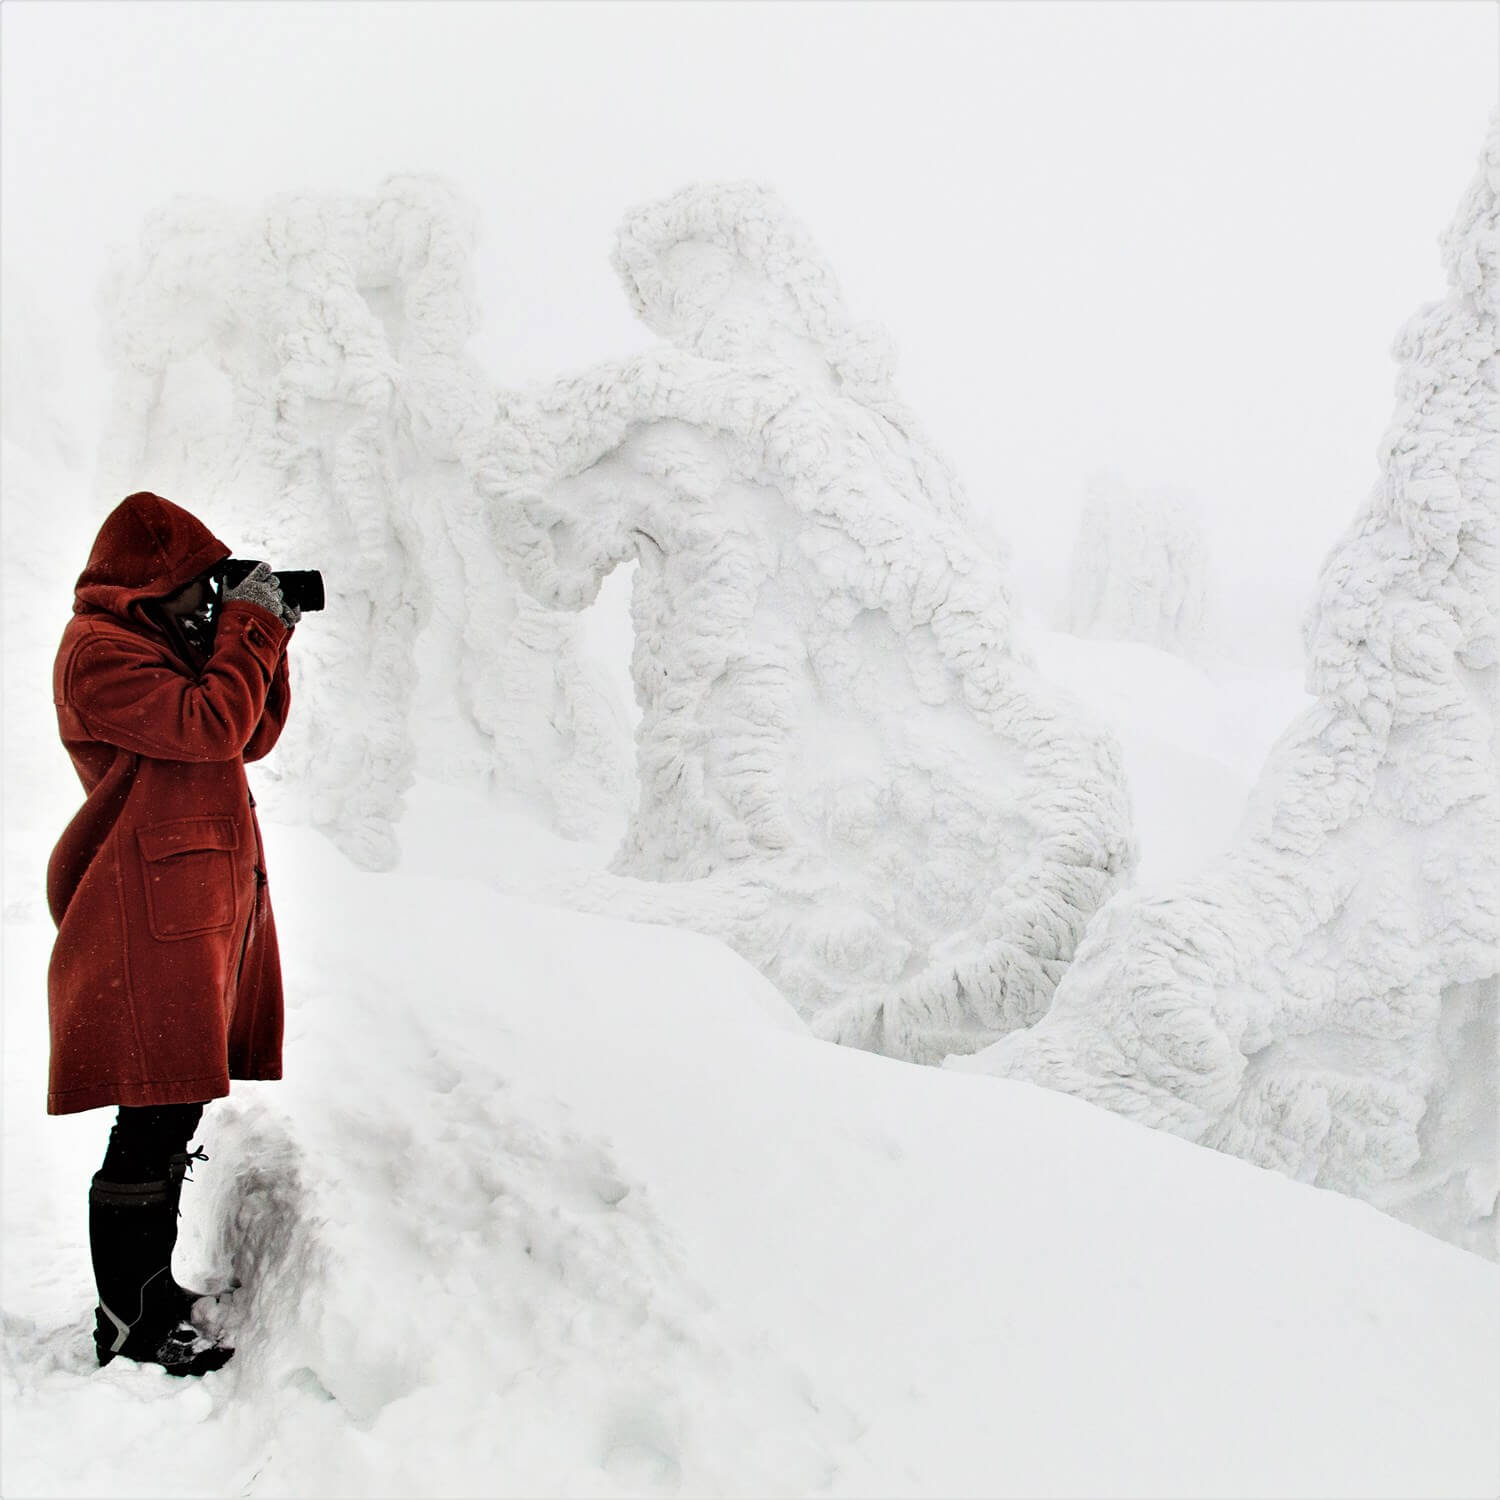 Photos: Hakkoda Mountain in heavy snowfall